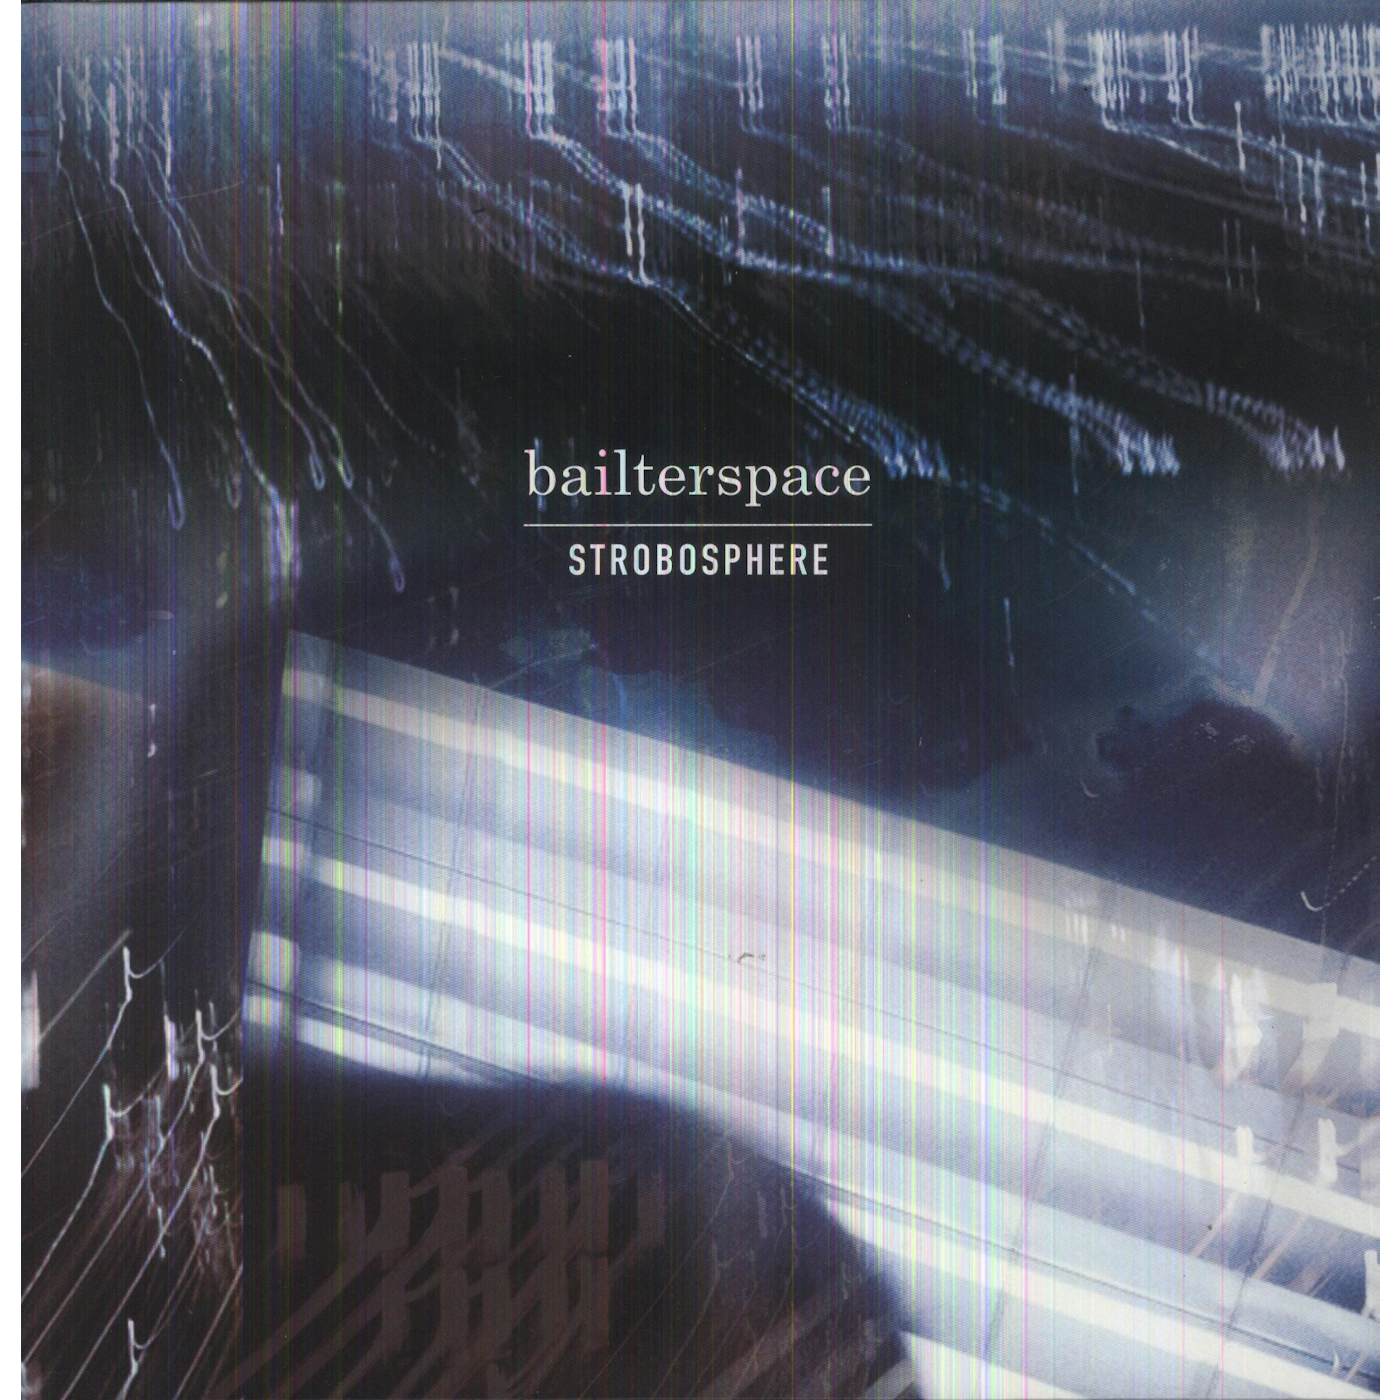 Bailter Space Strobosphere Vinyl Record